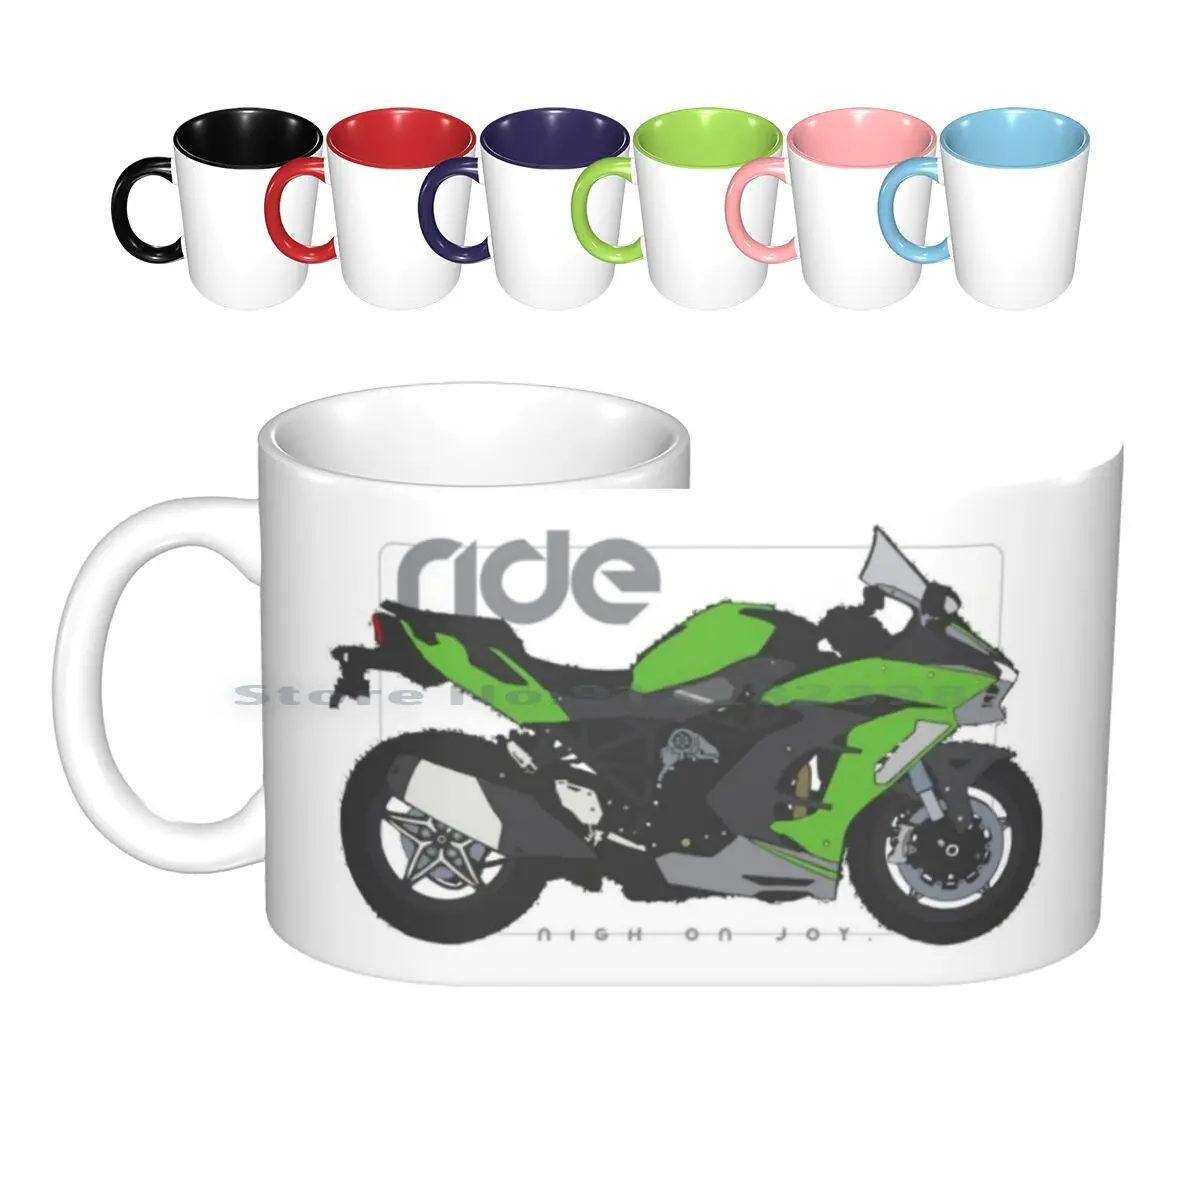 

Зеленые керамические кружки Ride Sxse, кофейные чашки, Кружка для молока и чая, кружка для езды на мотоцикле и велосипеде, крутая уличная спортив...